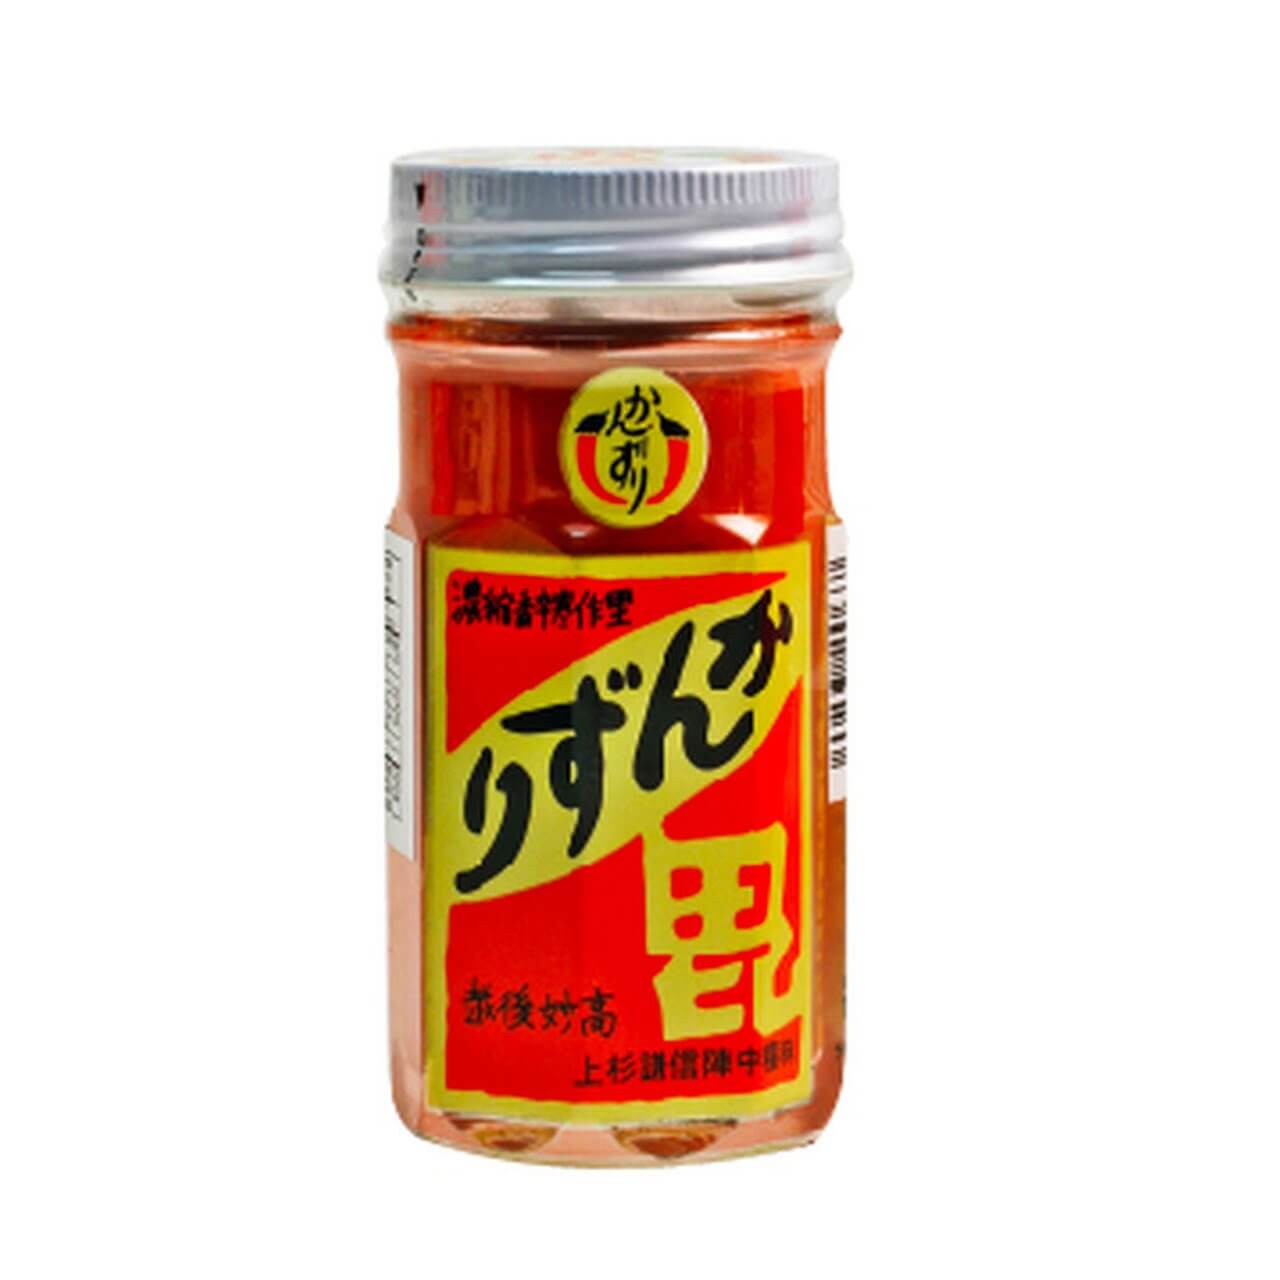 Kanzuri (Red Chili Yuzu paste)